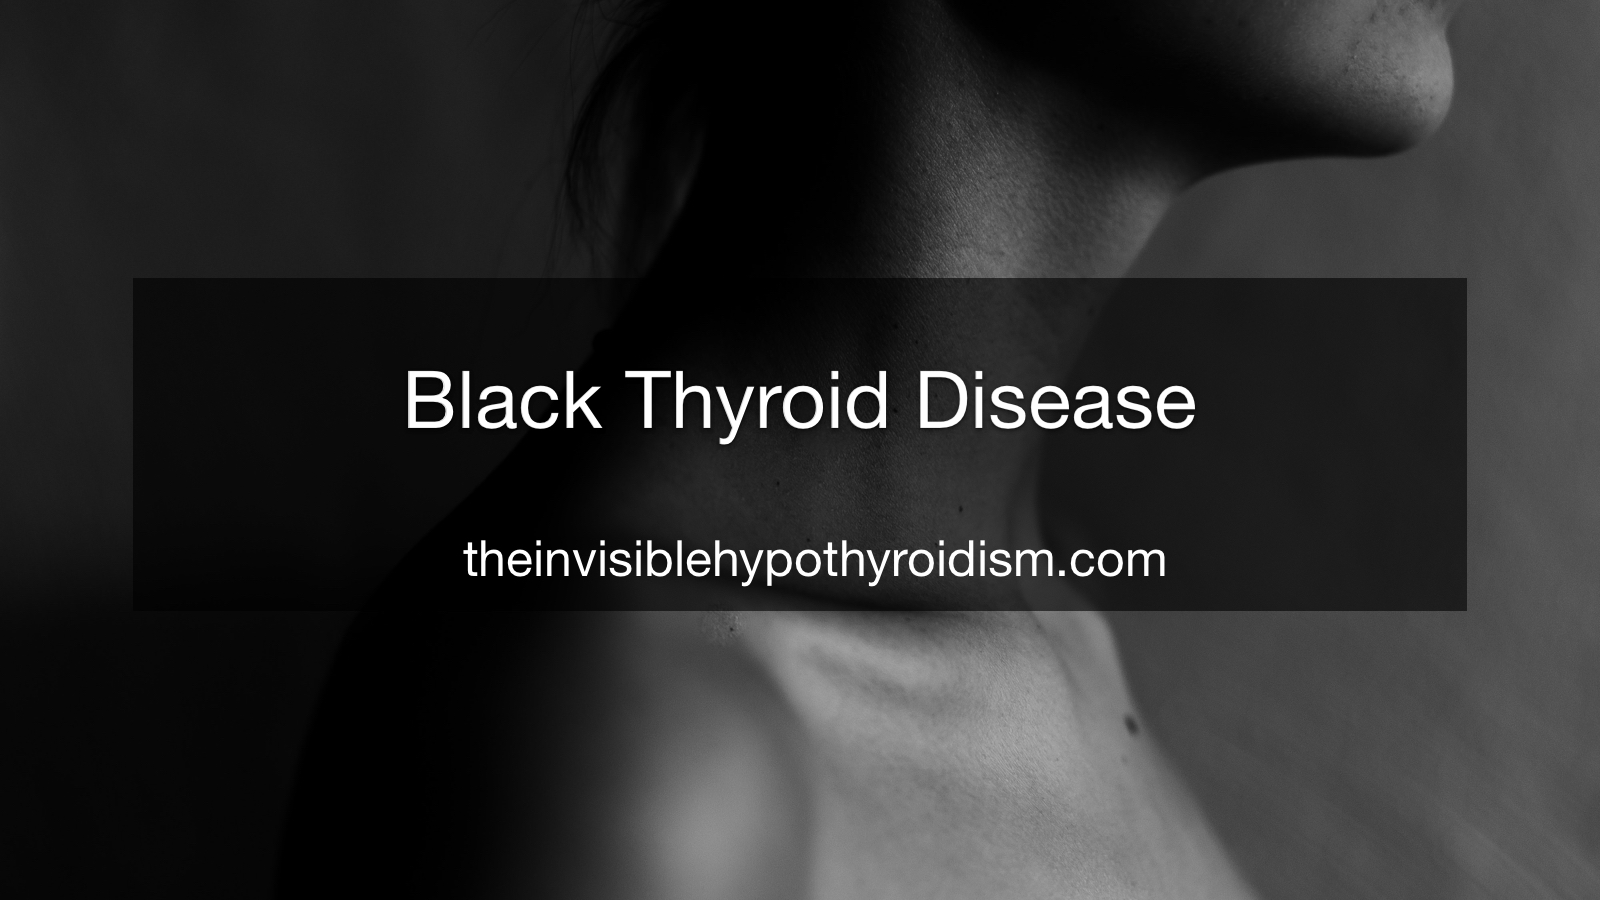 Black Thyroid Disease